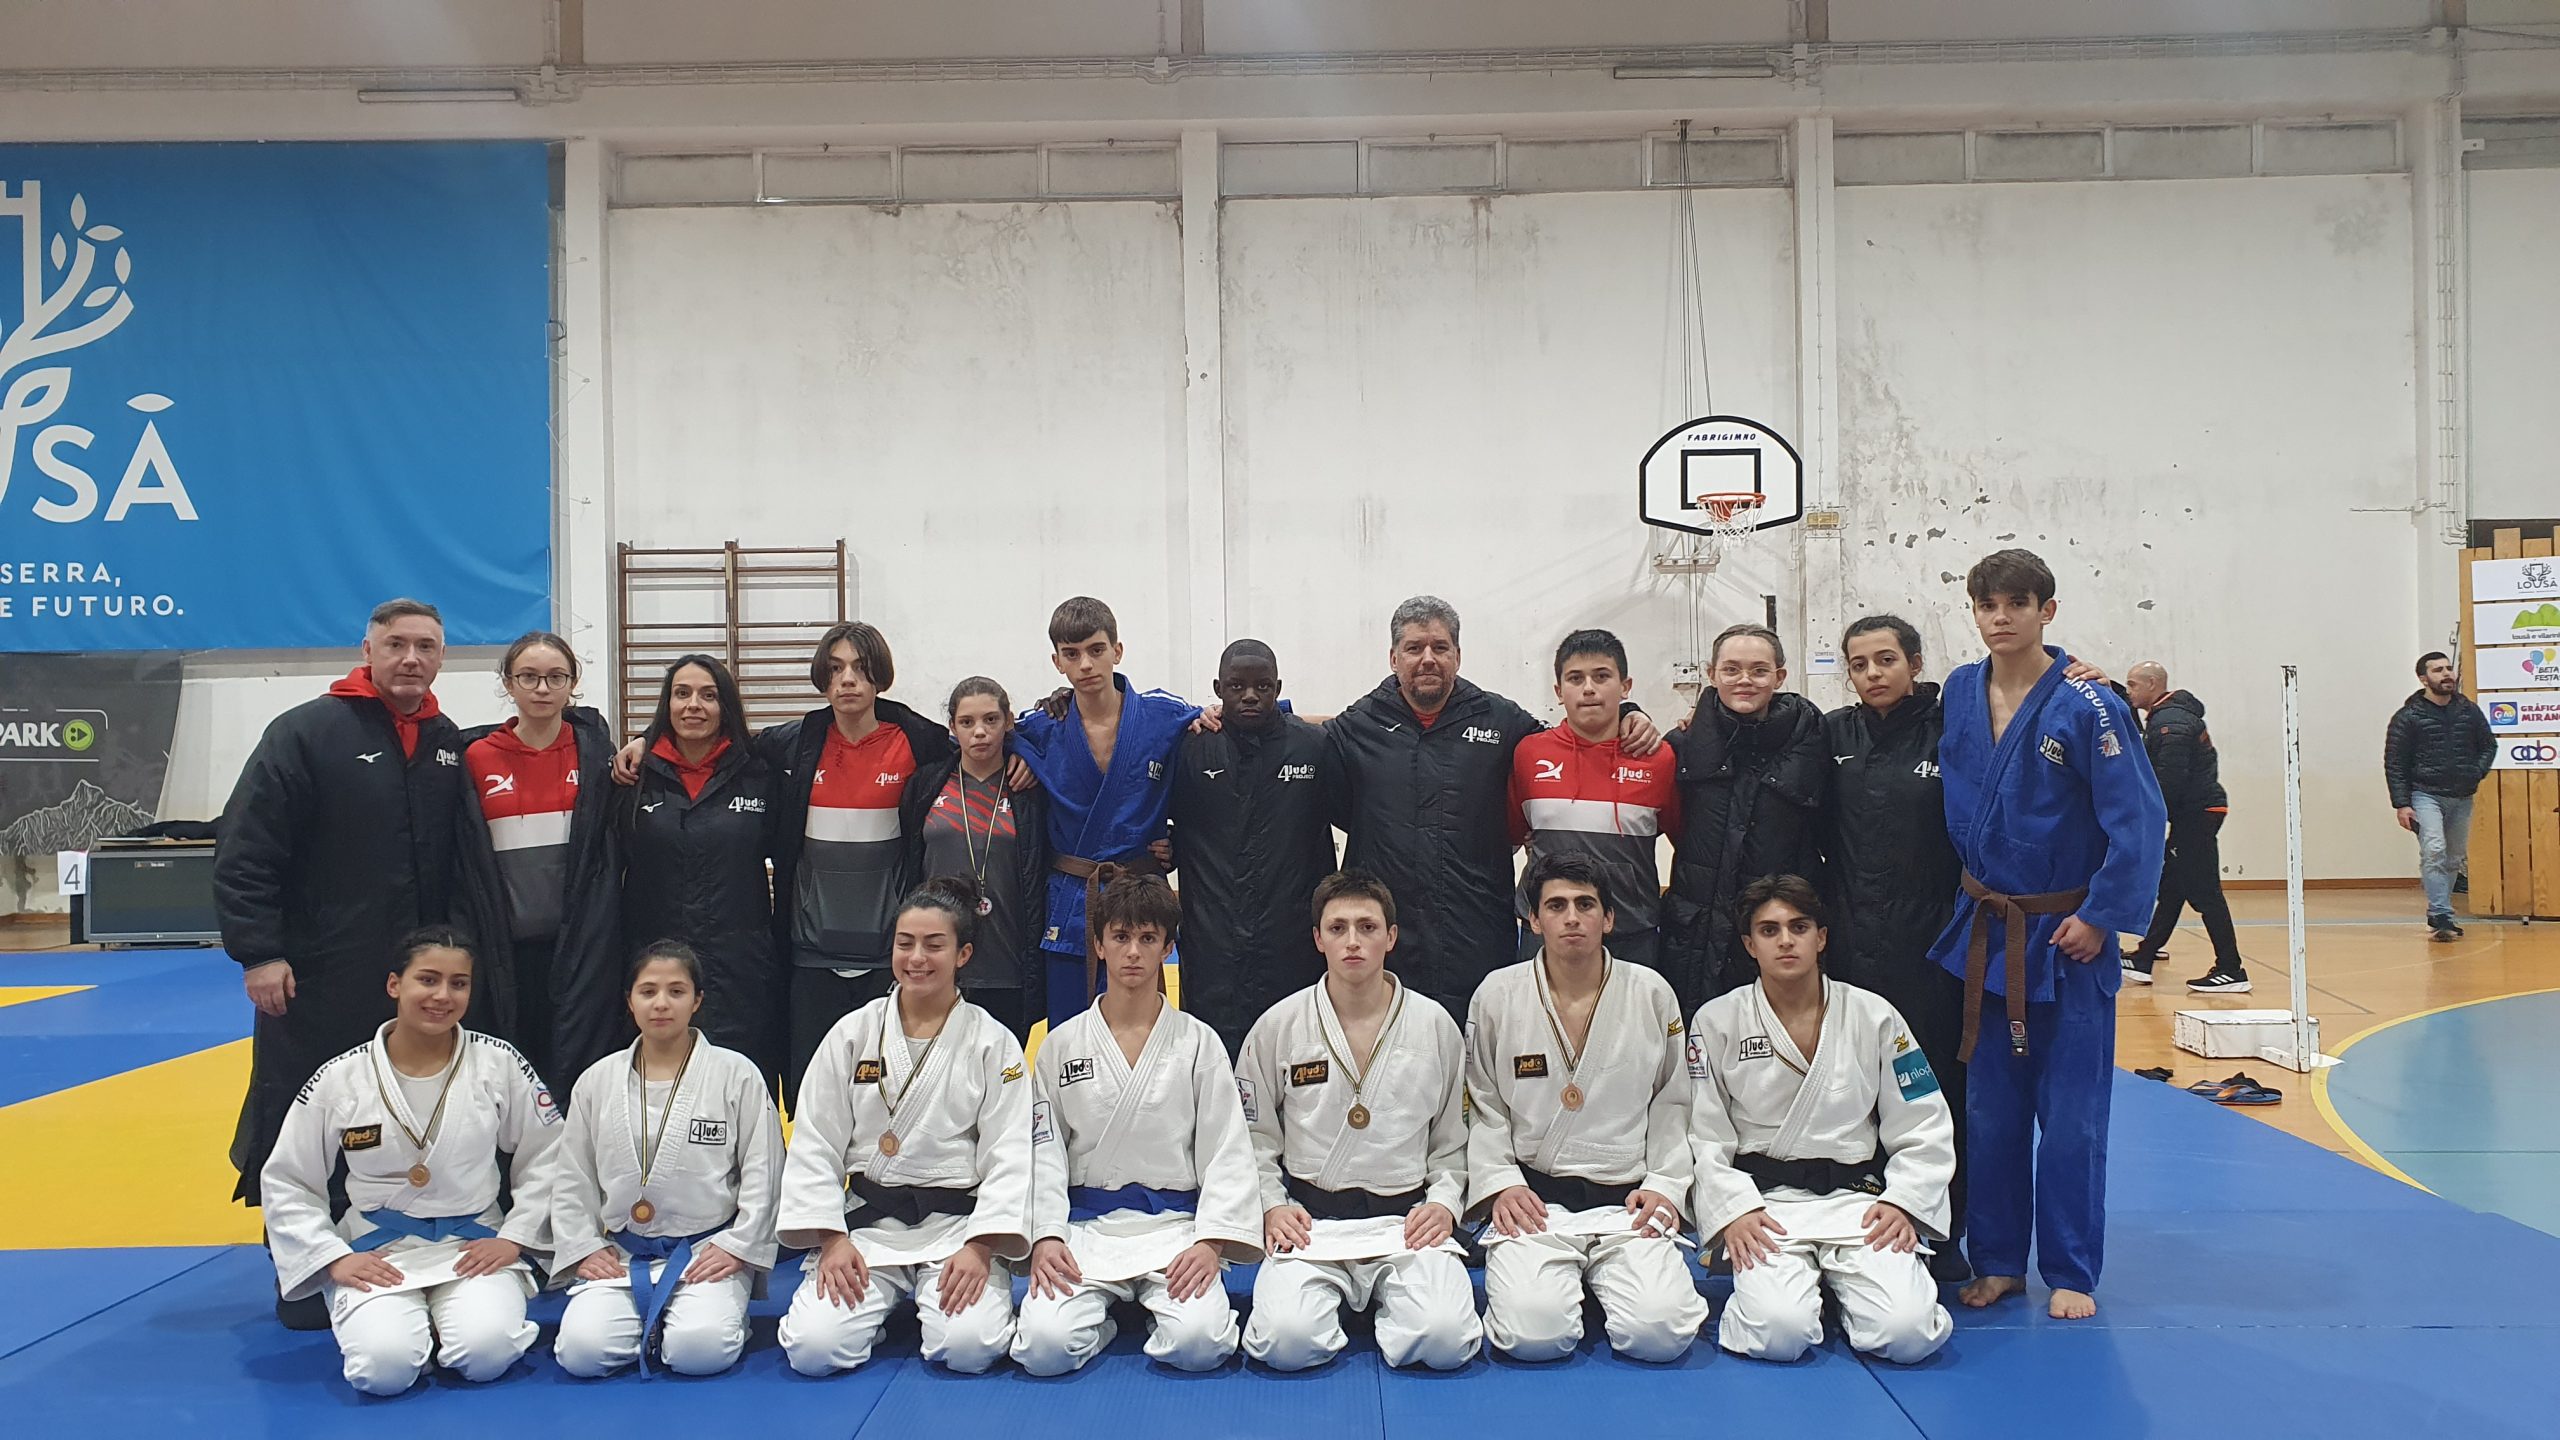 Judocas da 4 Judo arrecadam medalhas em Águeda e na Lousã